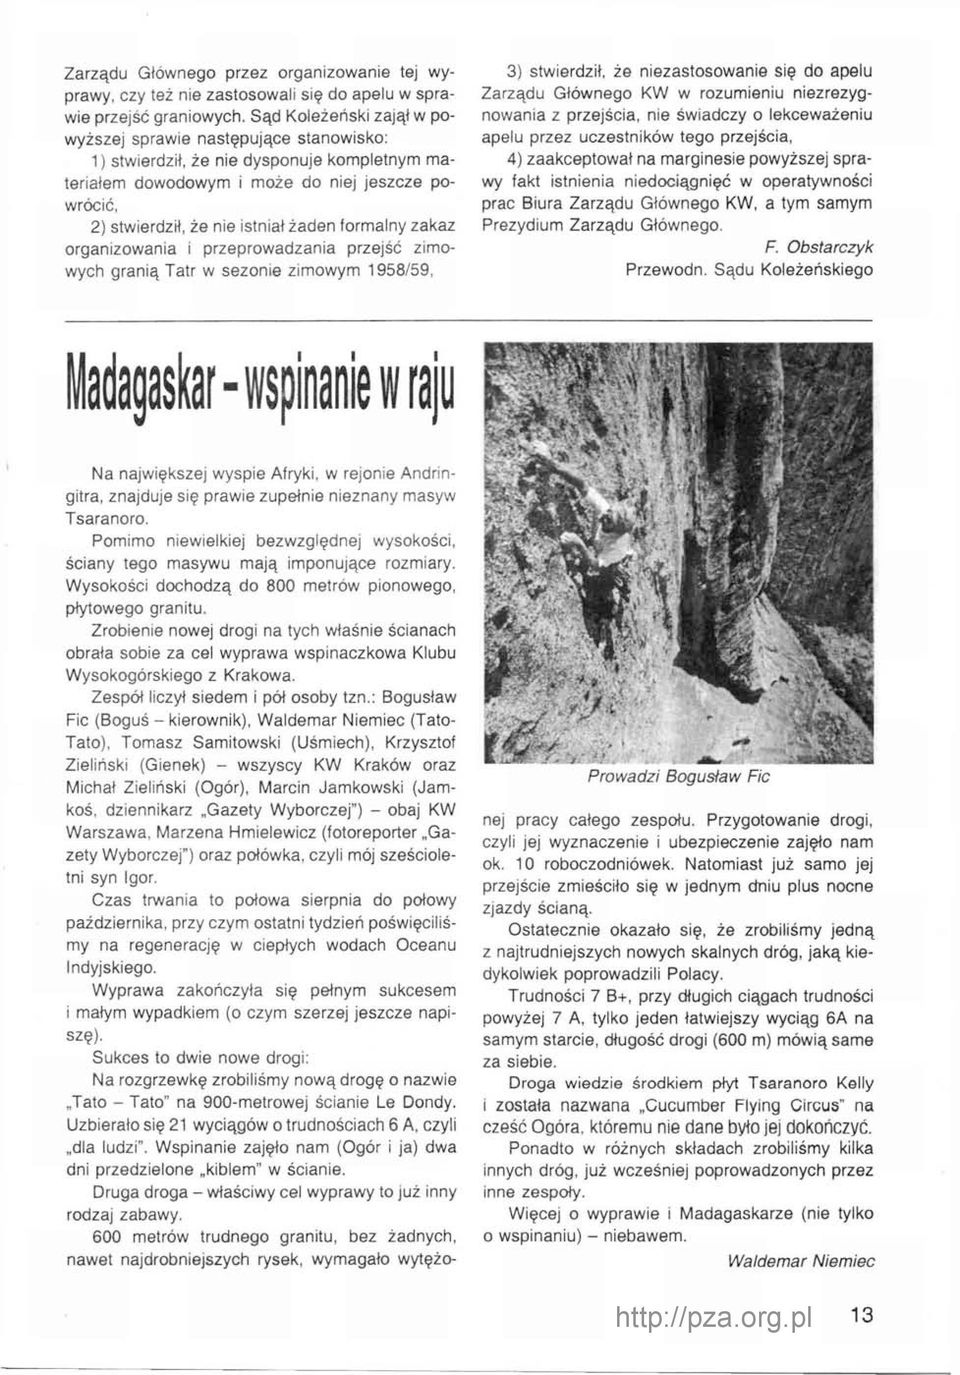 formalny zakaz organizowania i przeprowadzania przejść zimowych granią Tatr w sezonie zimowym 1958/59, 3) stwierdził, że niezastosowanie się do apelu Zarządu Głównego KW w rozumieniu niezrezygnowania